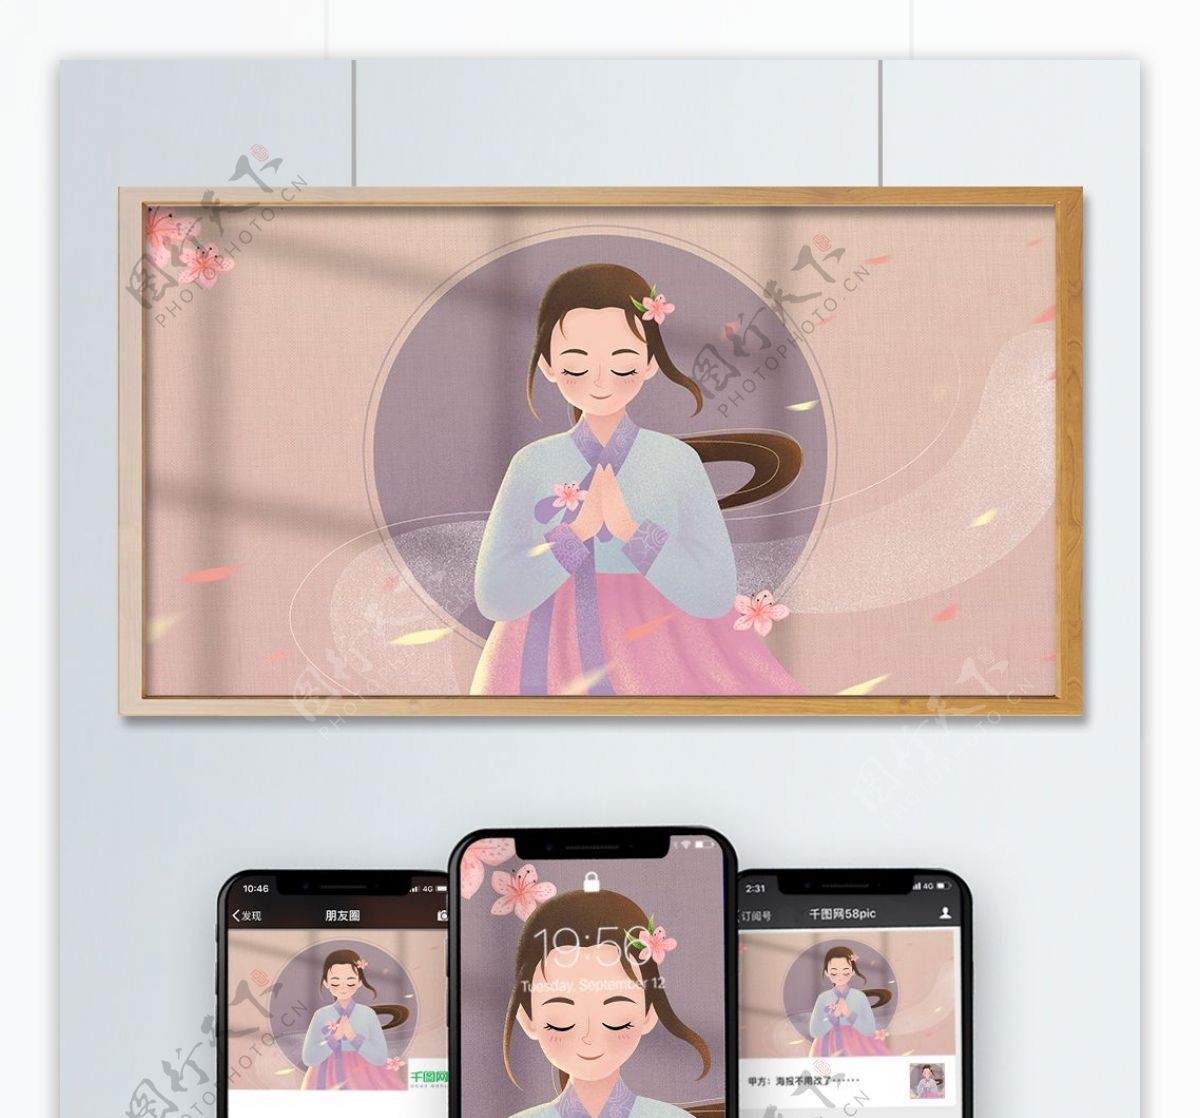 原创清新可爱民族特色插画朝鲜族姑娘